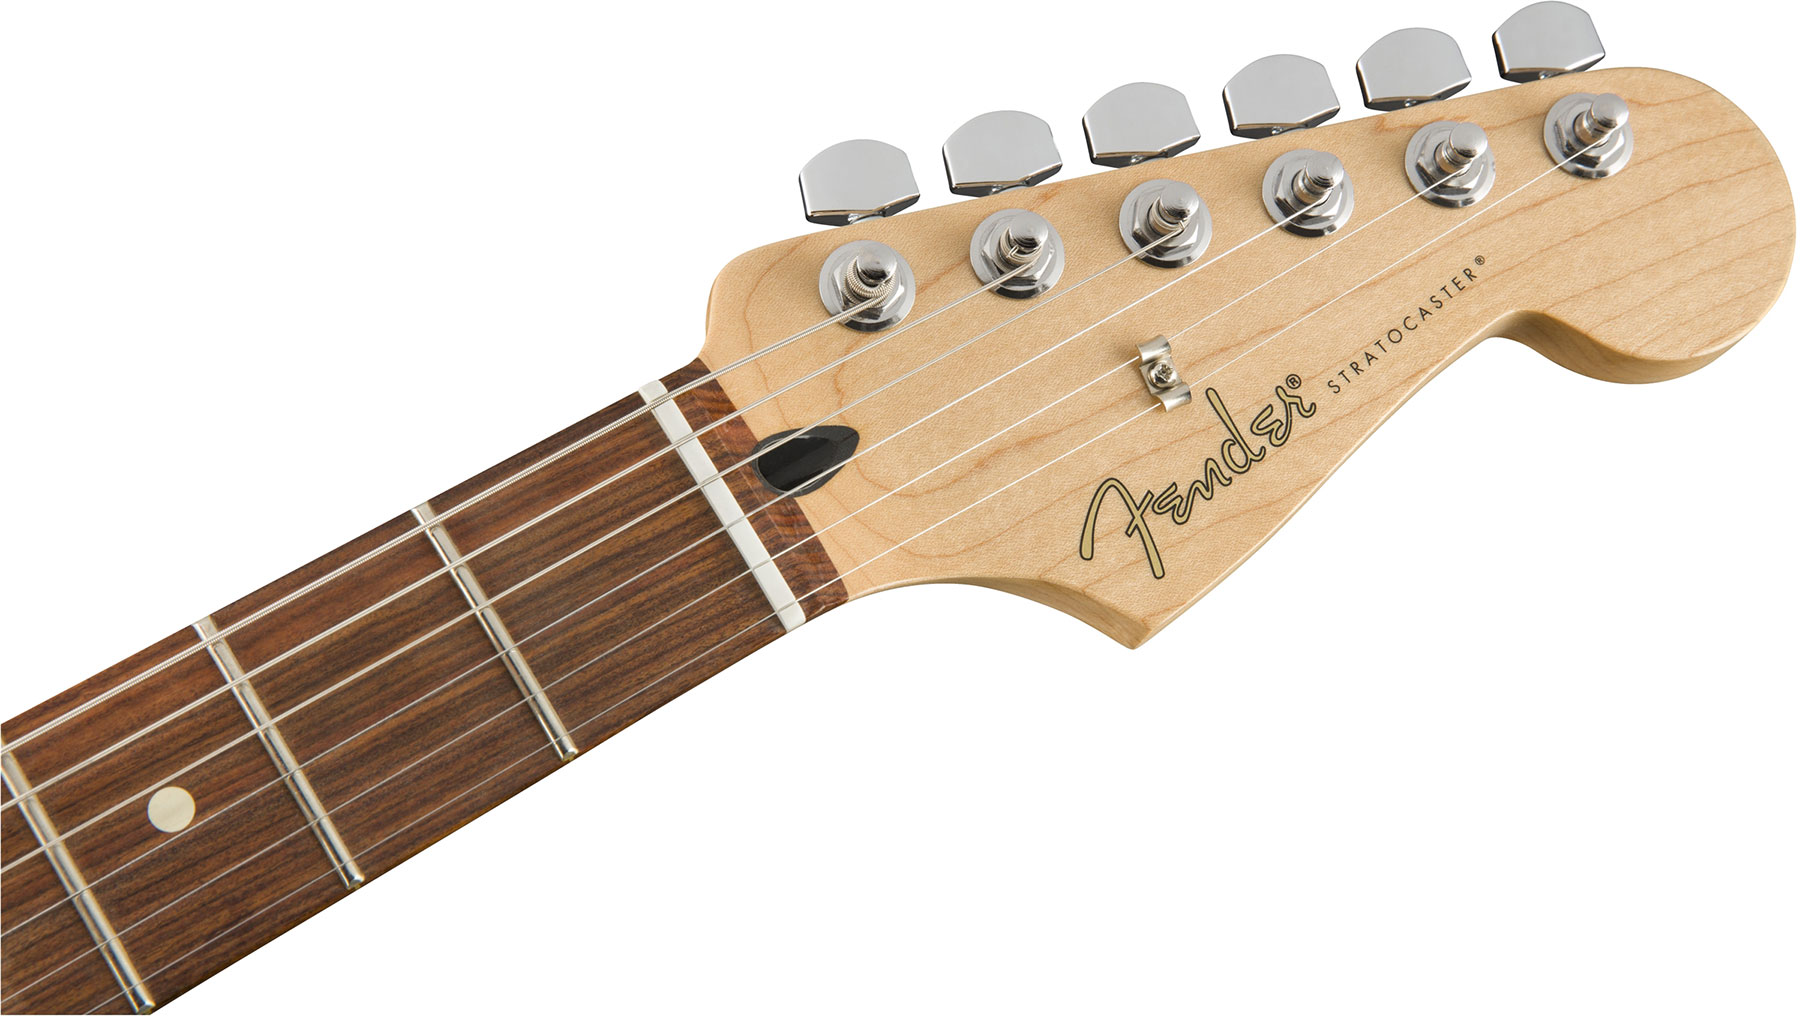 Fender Strat Player Mex Hss Pf - 3-color Sunburst - Str shape electric guitar - Variation 2